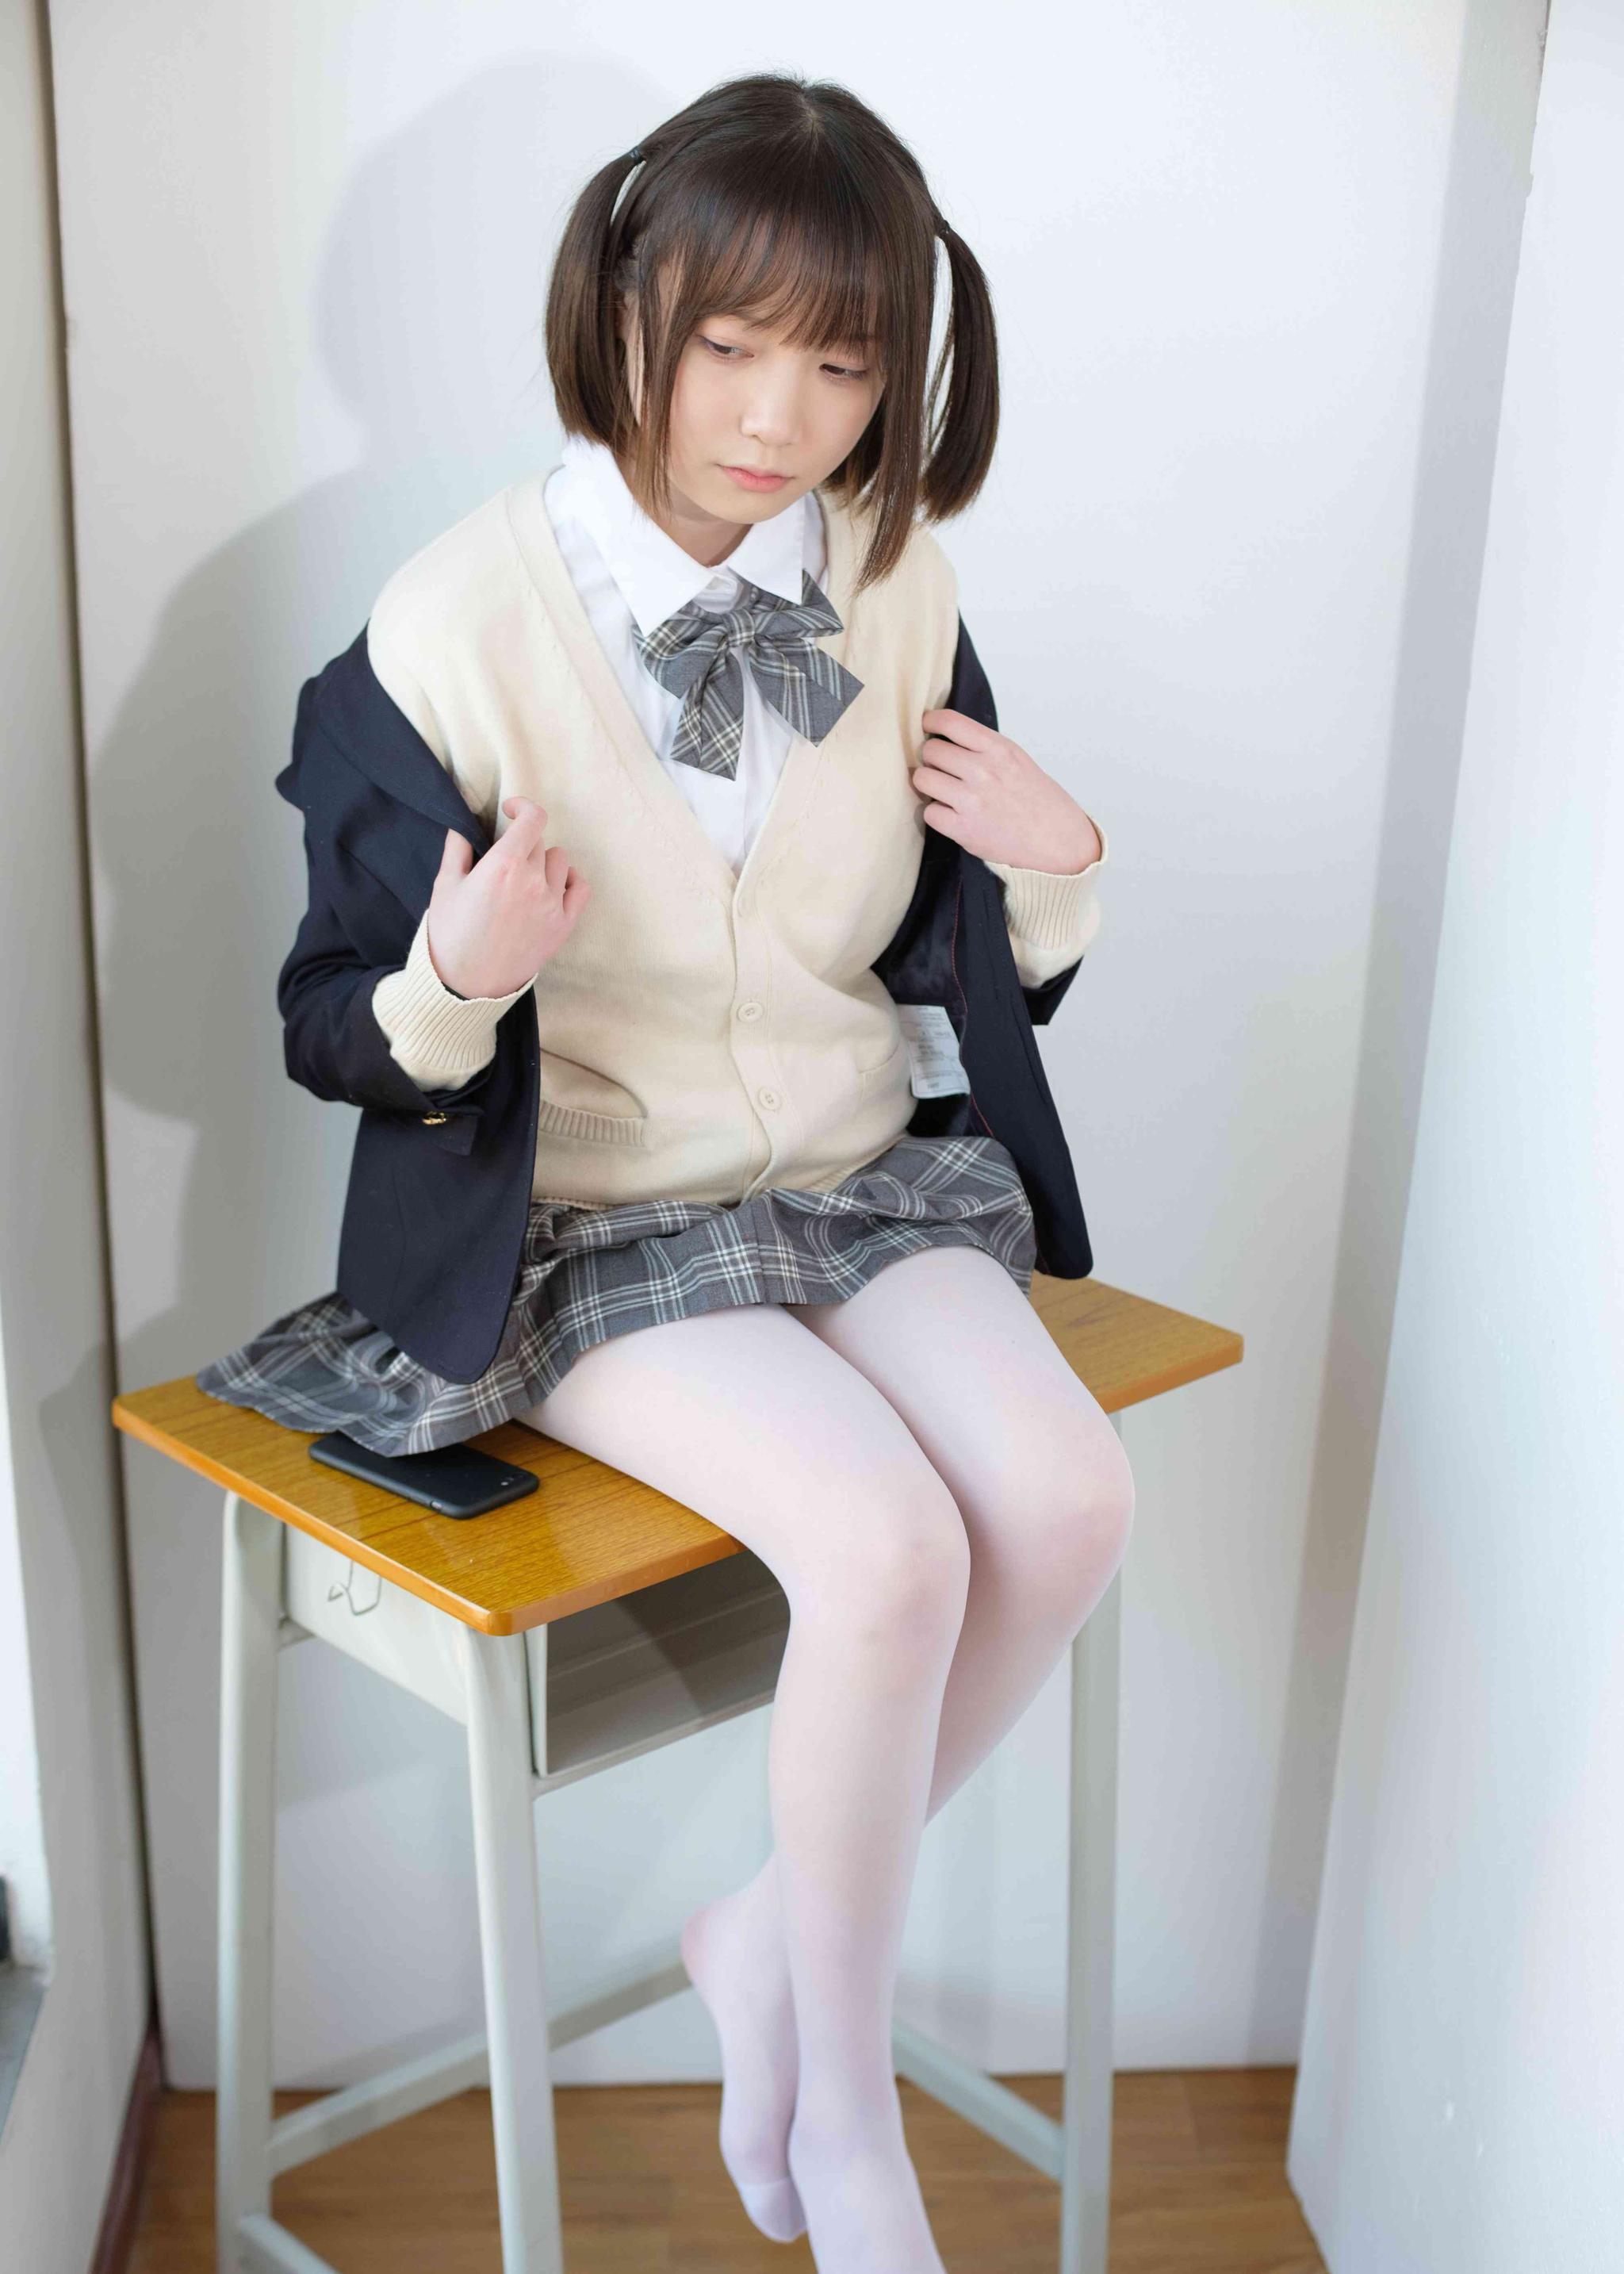 女孩摄影:坐在椅子上的白丝jk制服美少女